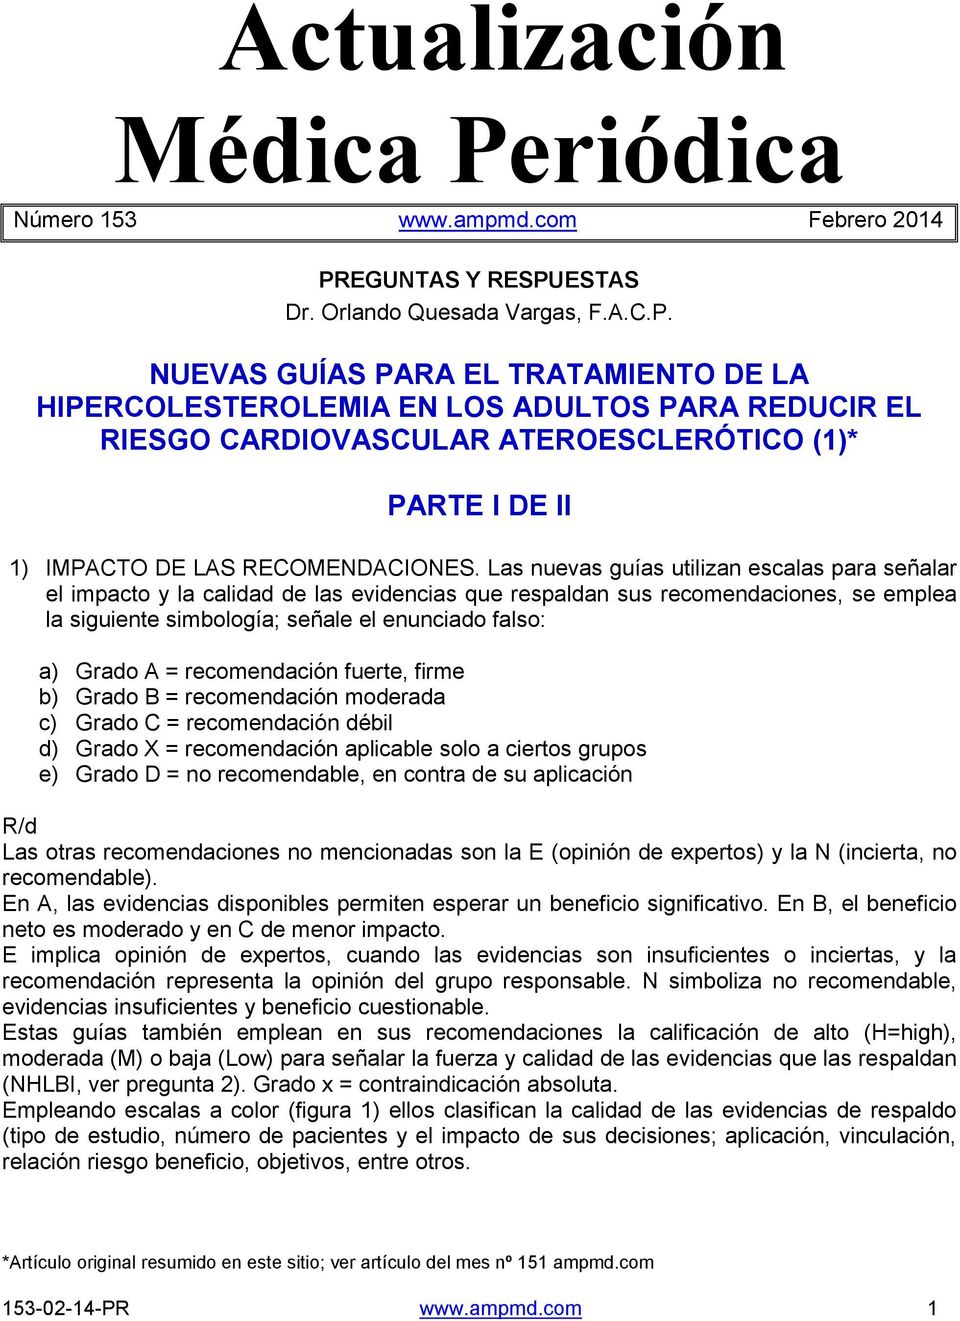 EGUNTAS Y RESPUESTAS Dr. Orlando Quesada Vargas, F.A.C.P. NUEVAS GUÍAS PARA EL TRATAMIENTO DE LA HIPERCOLESTEROLEMIA EN LOS ADULTOS PARA REDUCIR EL RIESGO CARDIOVASCULAR ATEROESCLERÓTICO (1)* PARTE I DE II 1) IMPACTO DE LAS RECOMENDACIONES.